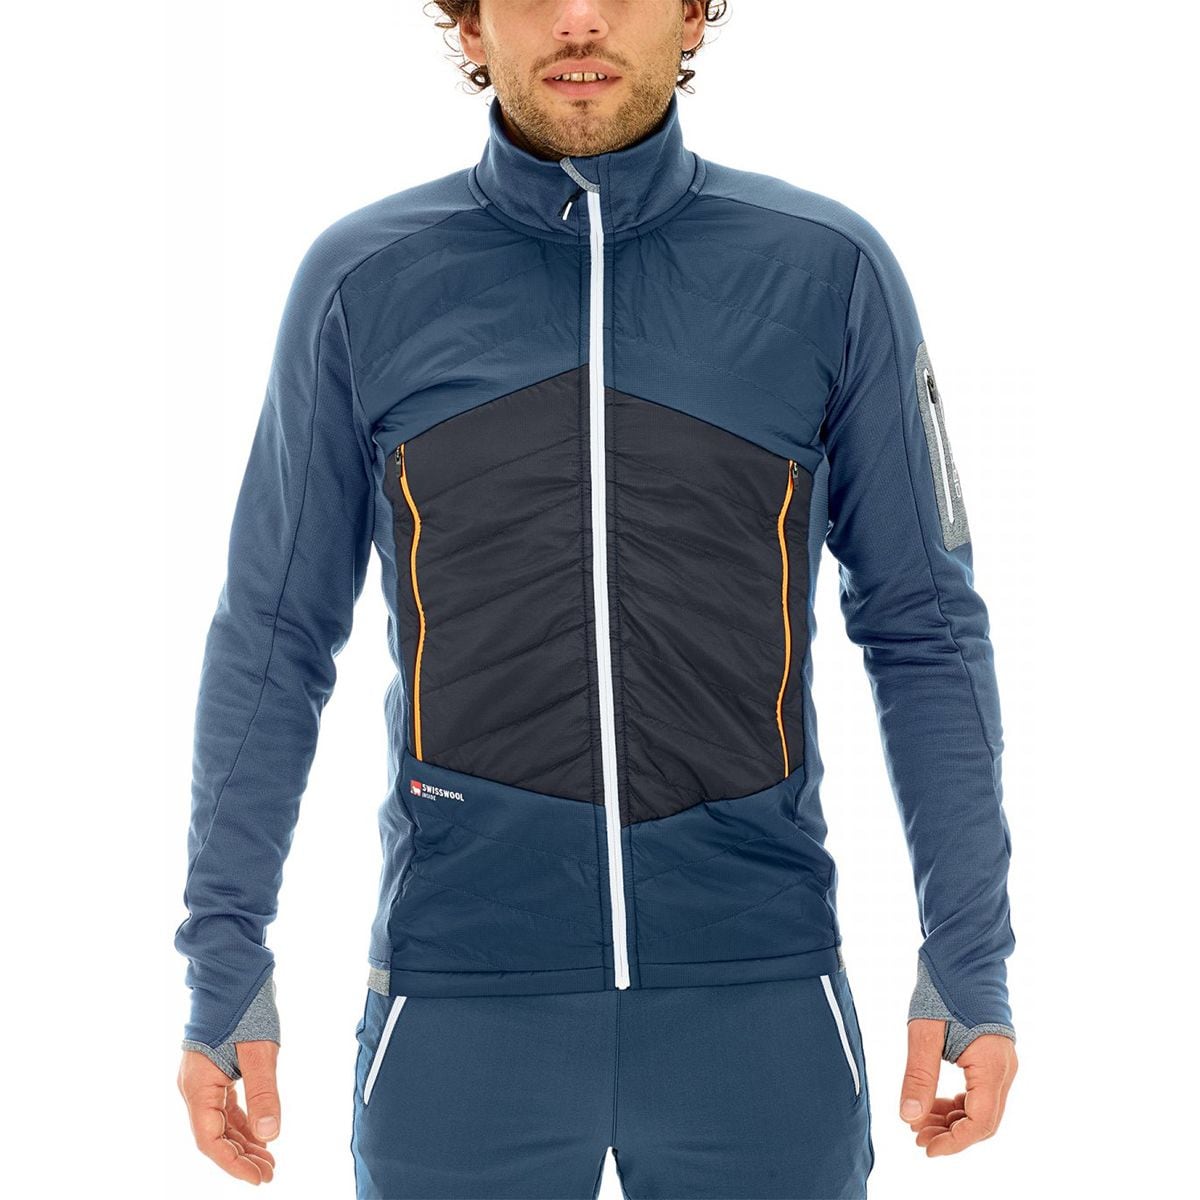 Ortovox Swisswool Piz Roseg Jacket - Men's - Clothing